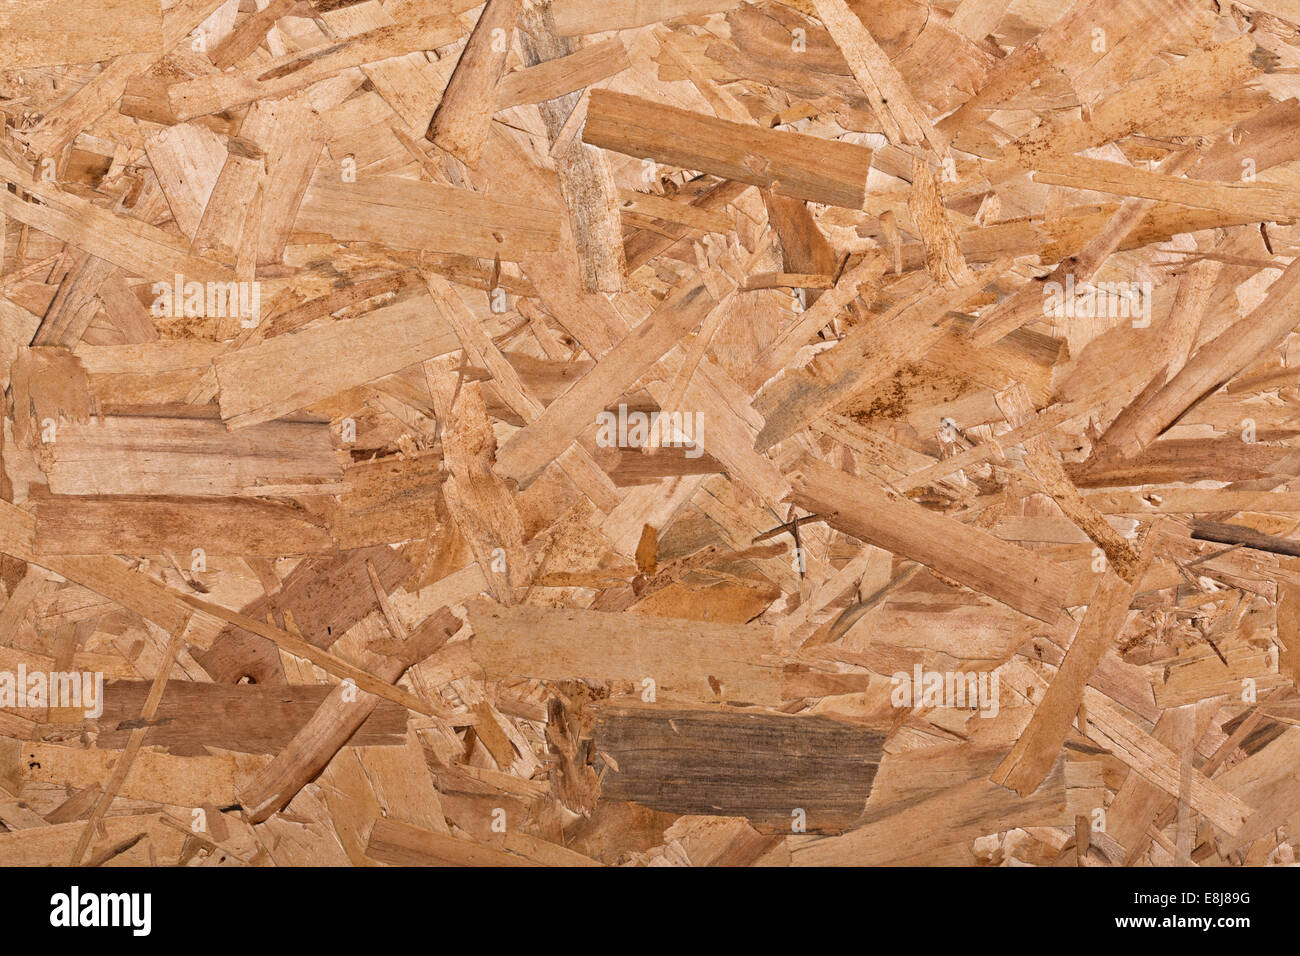 Dettaglio di osb texture di sfondo di legno Foto Stock